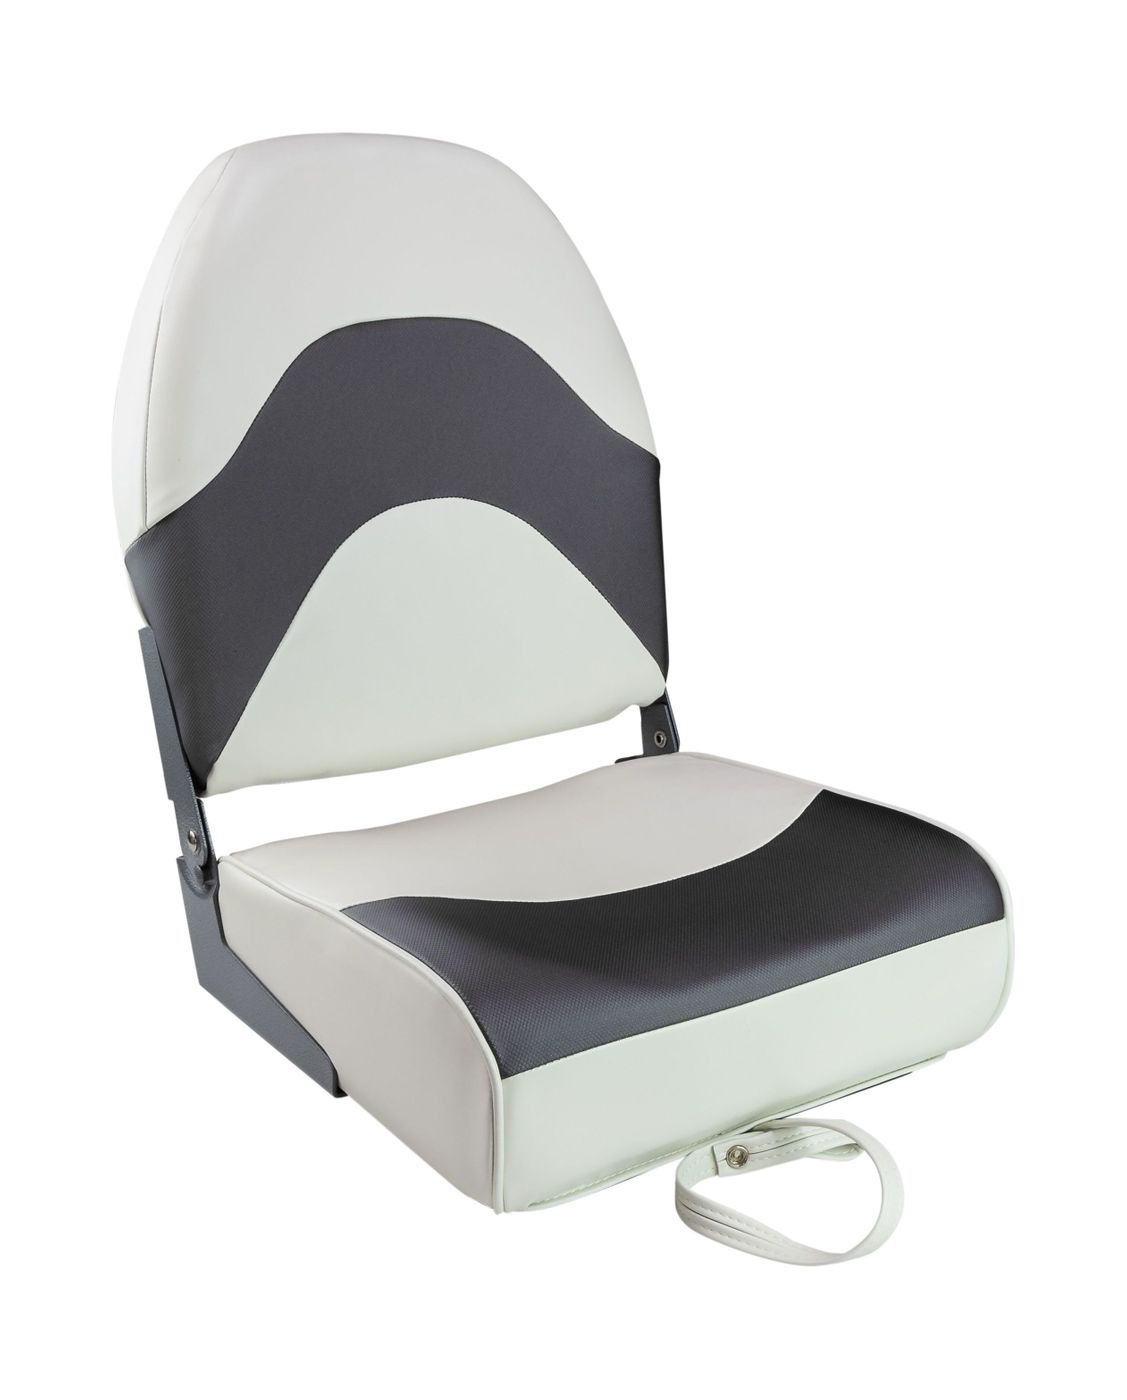 Кресло складное мягкое PREMIUM WAVE, цвет белый/черный 1062089 кресло мягкое складное classic обивка винил серый 75102gc mr